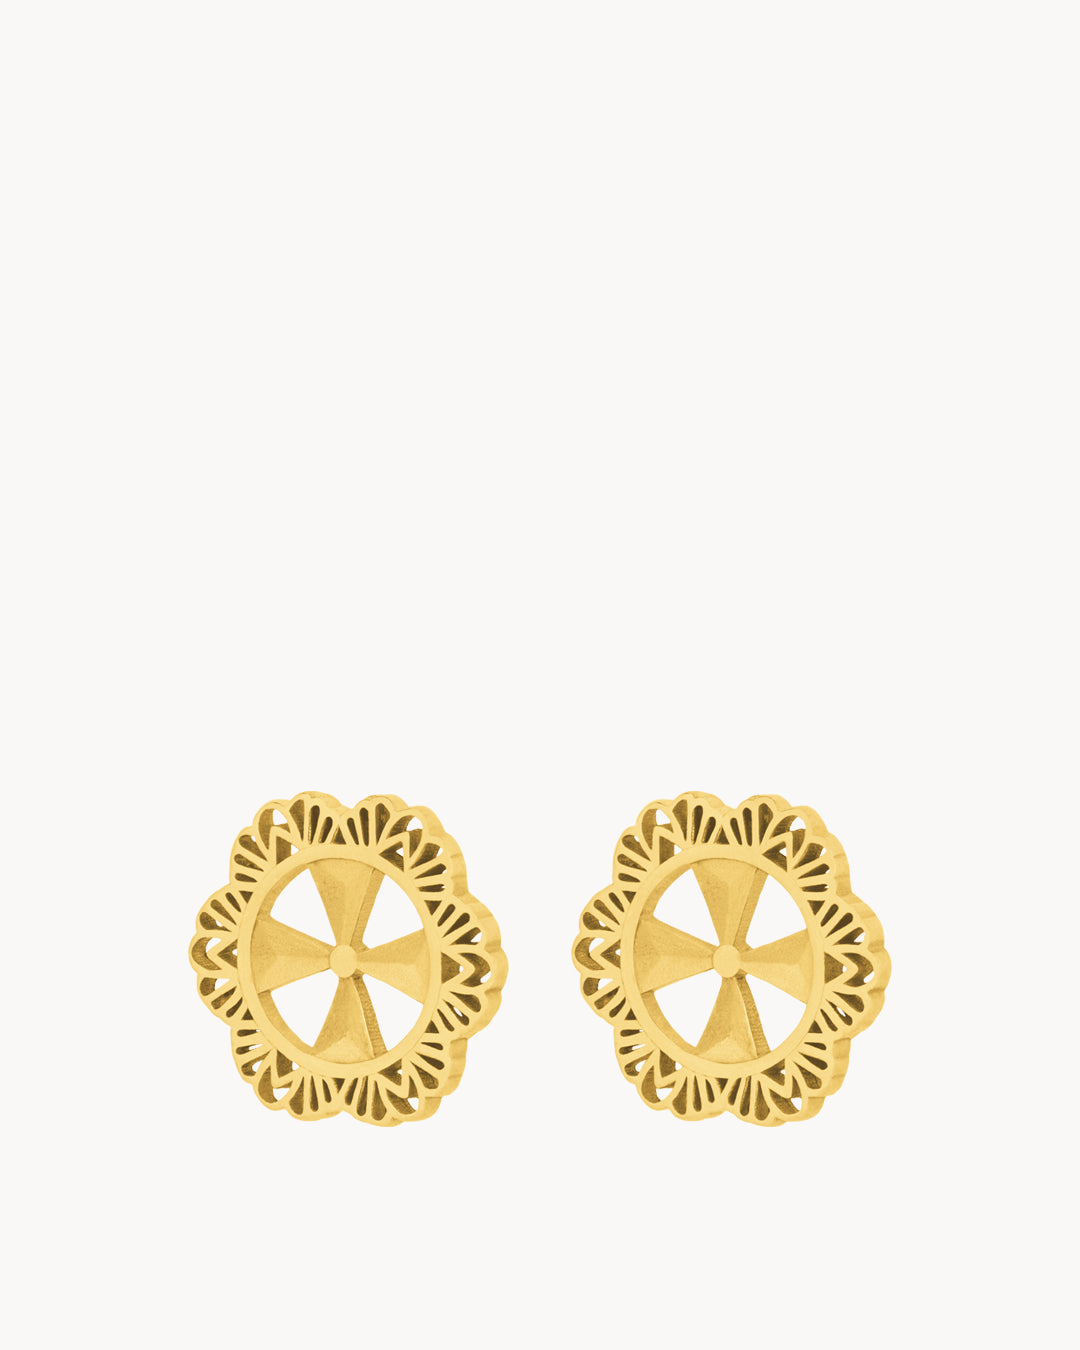 Kavallier Stud Earrings, Gold